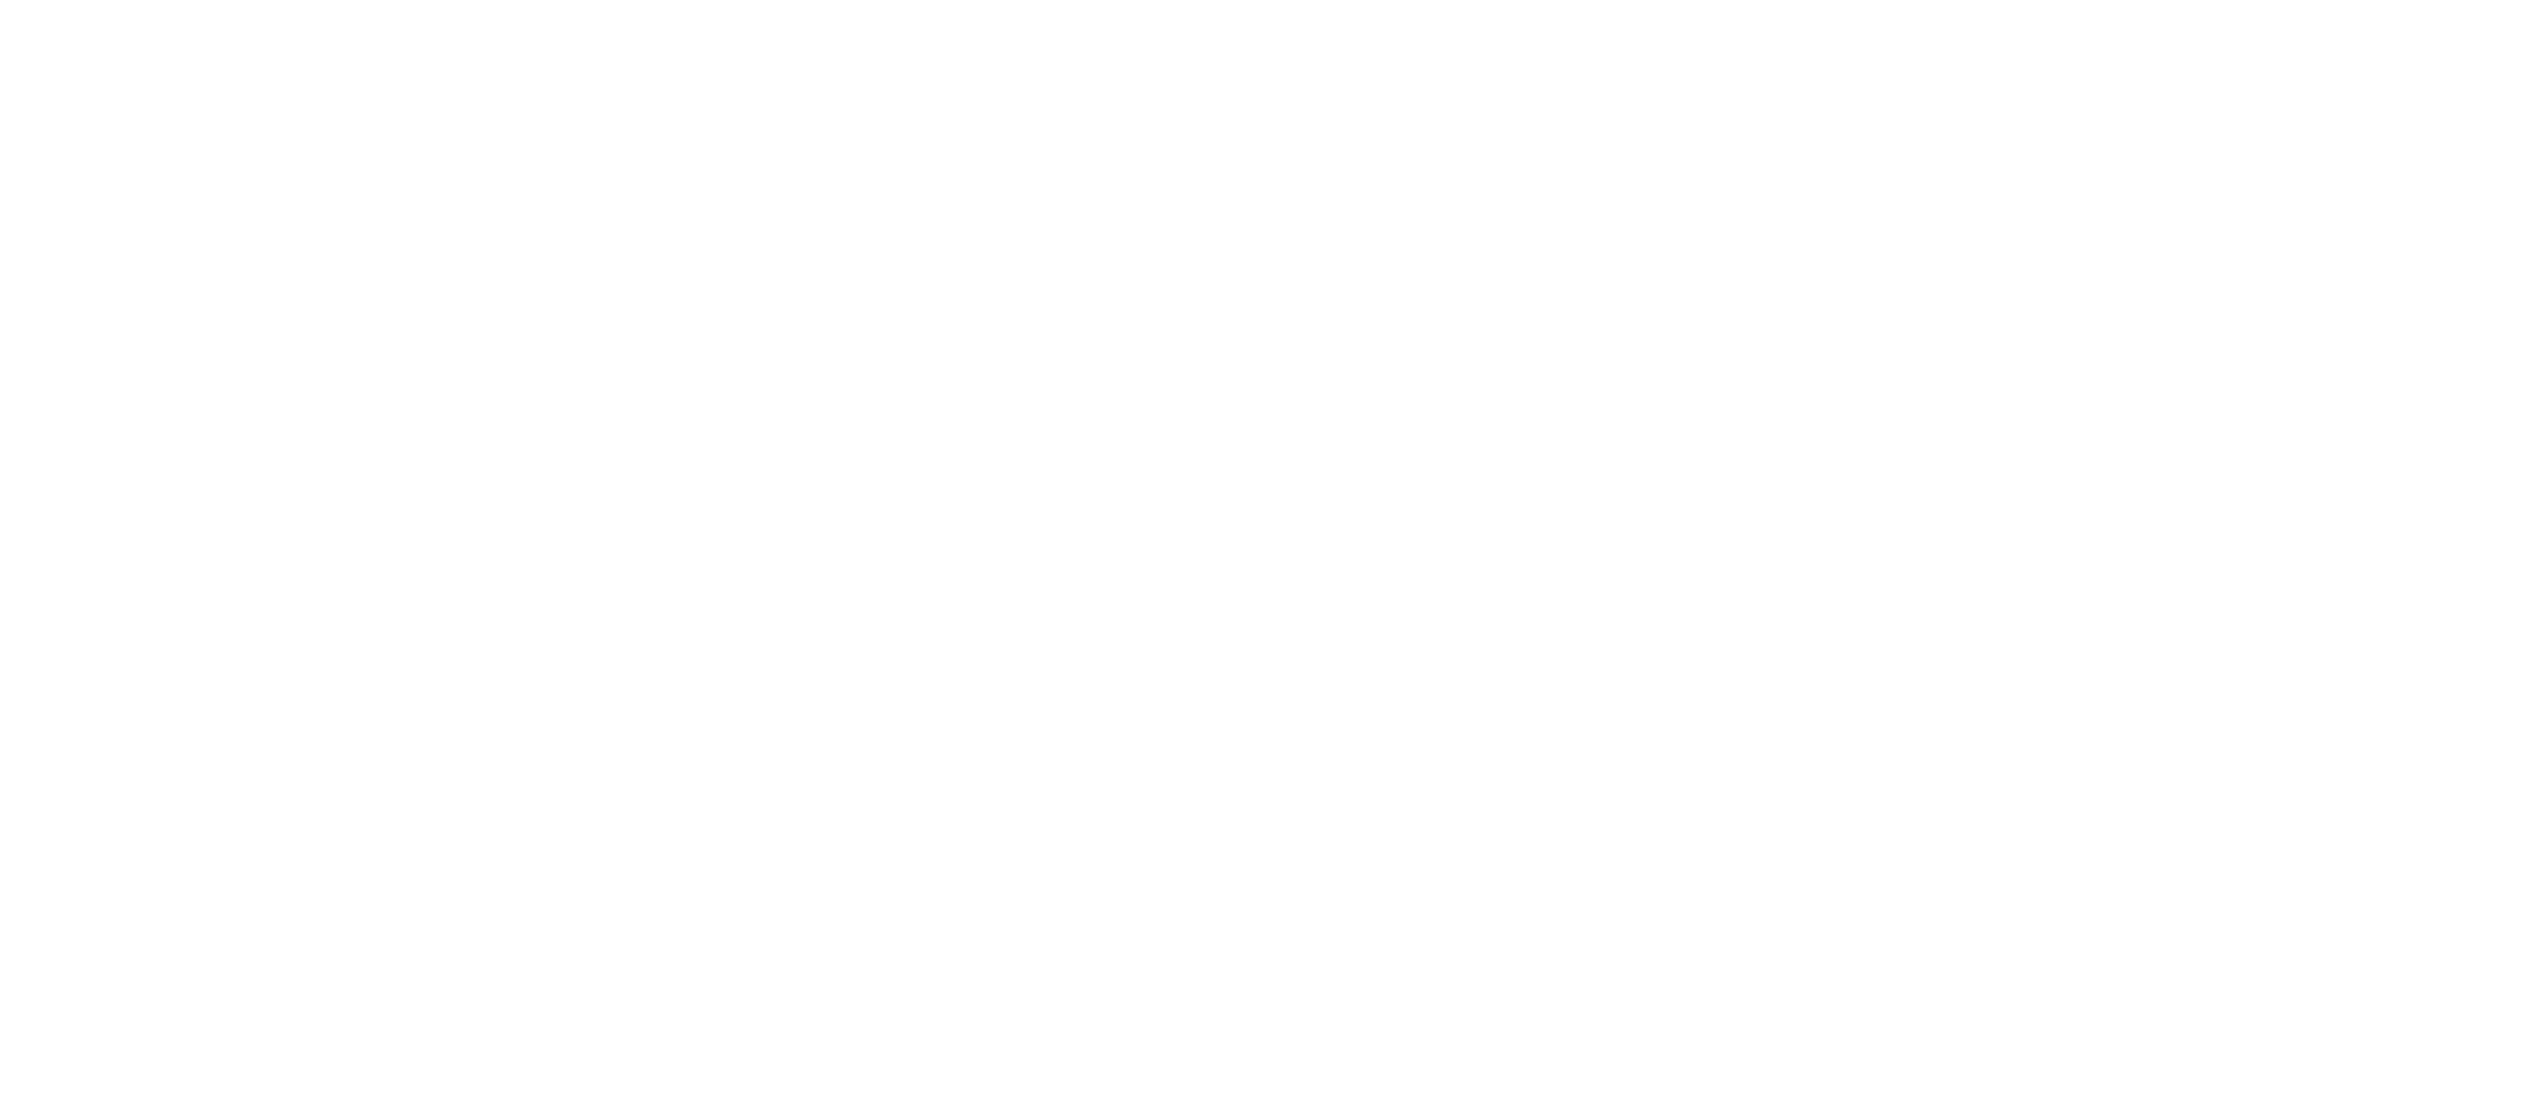 Minicuper